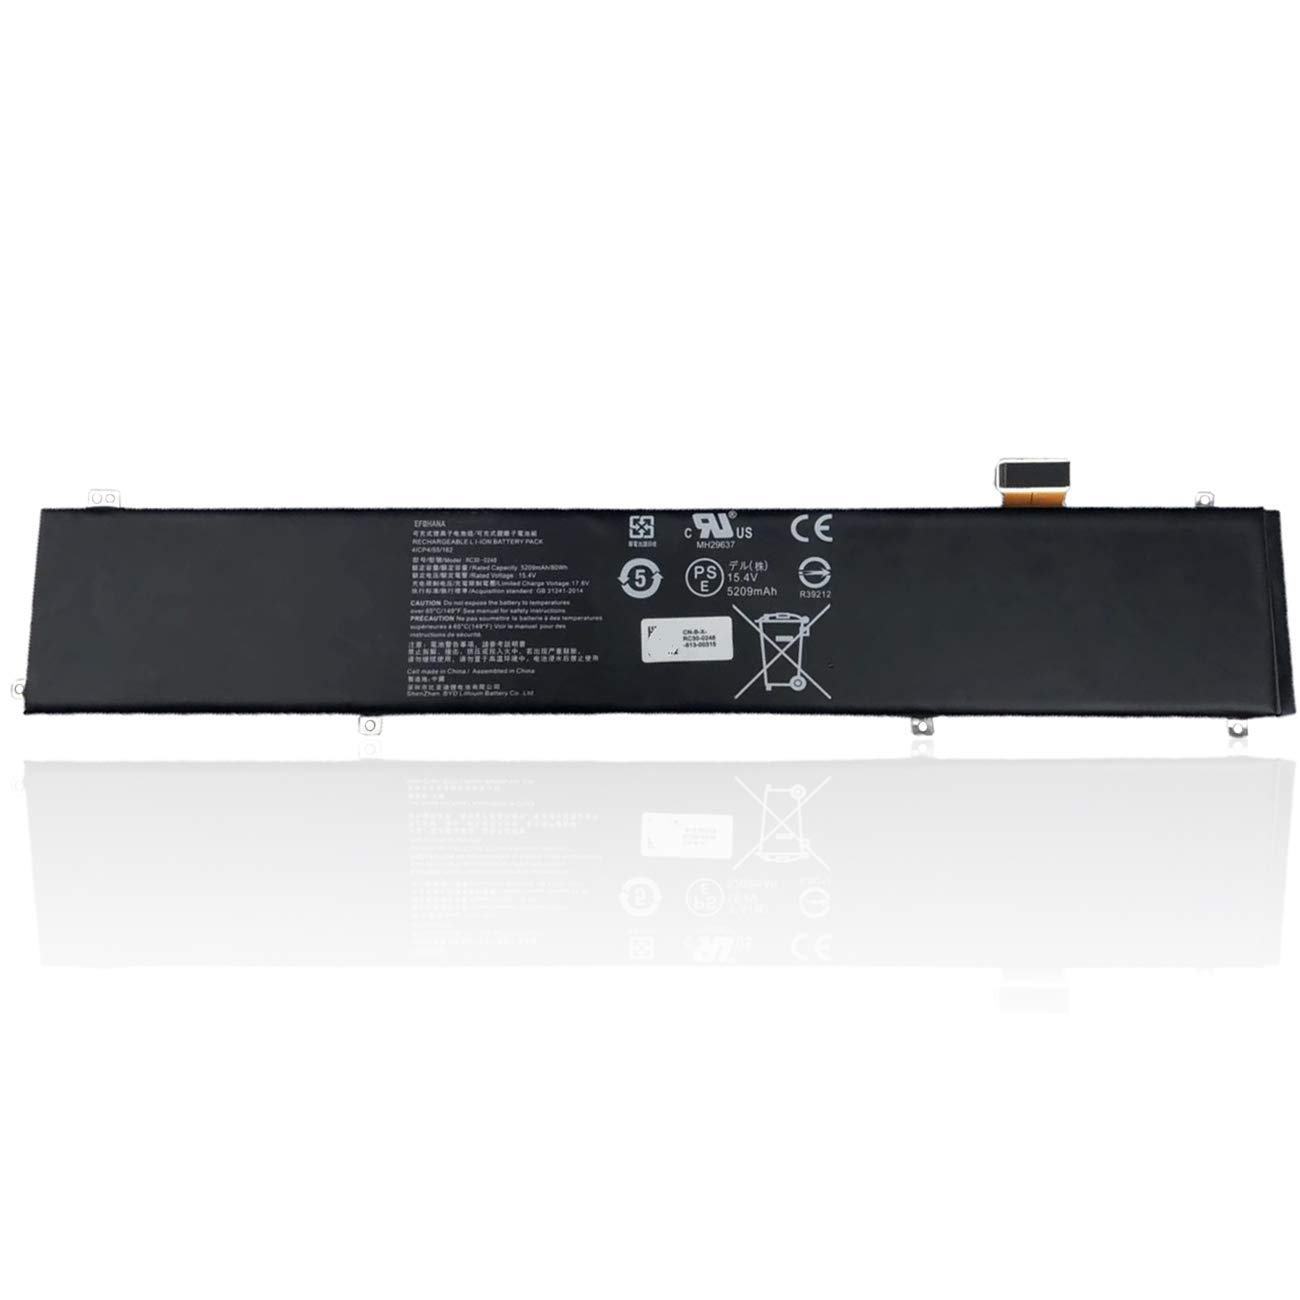 efohana RC30-0248 Laptop Battery Replacement for Razer Blade 15 2018 Advanced 15 GTX 1060 RZ09-02386 RZ09-02385 15 2019 RZ09-0288 RZ09-0301 Series ...